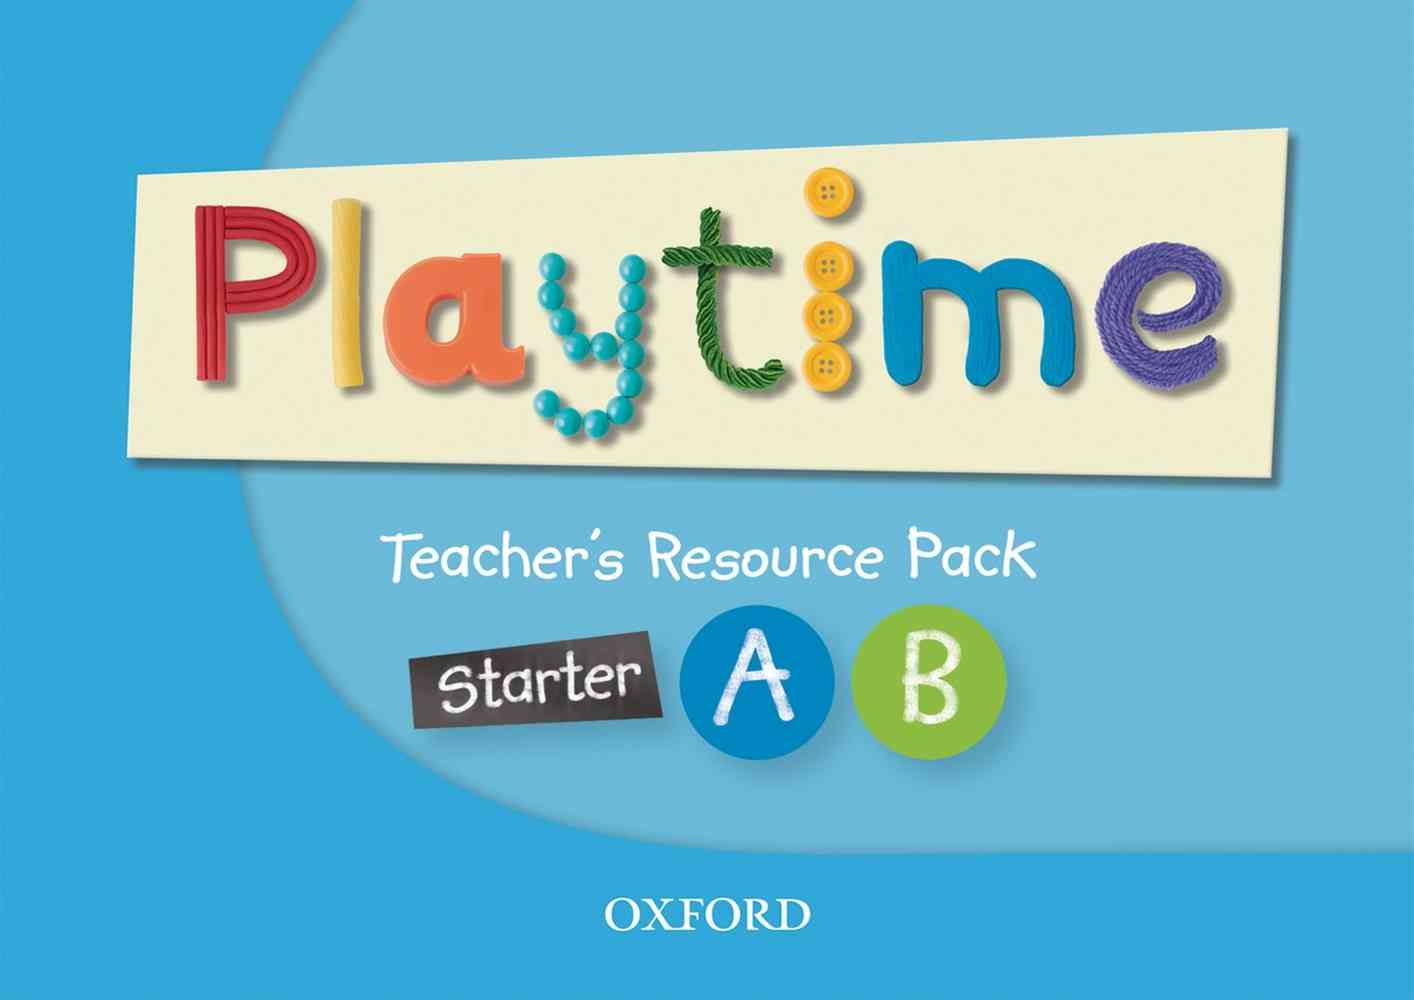 Playtime Starter, A & B: Teacher’s Resource Pack niculescu.ro imagine noua